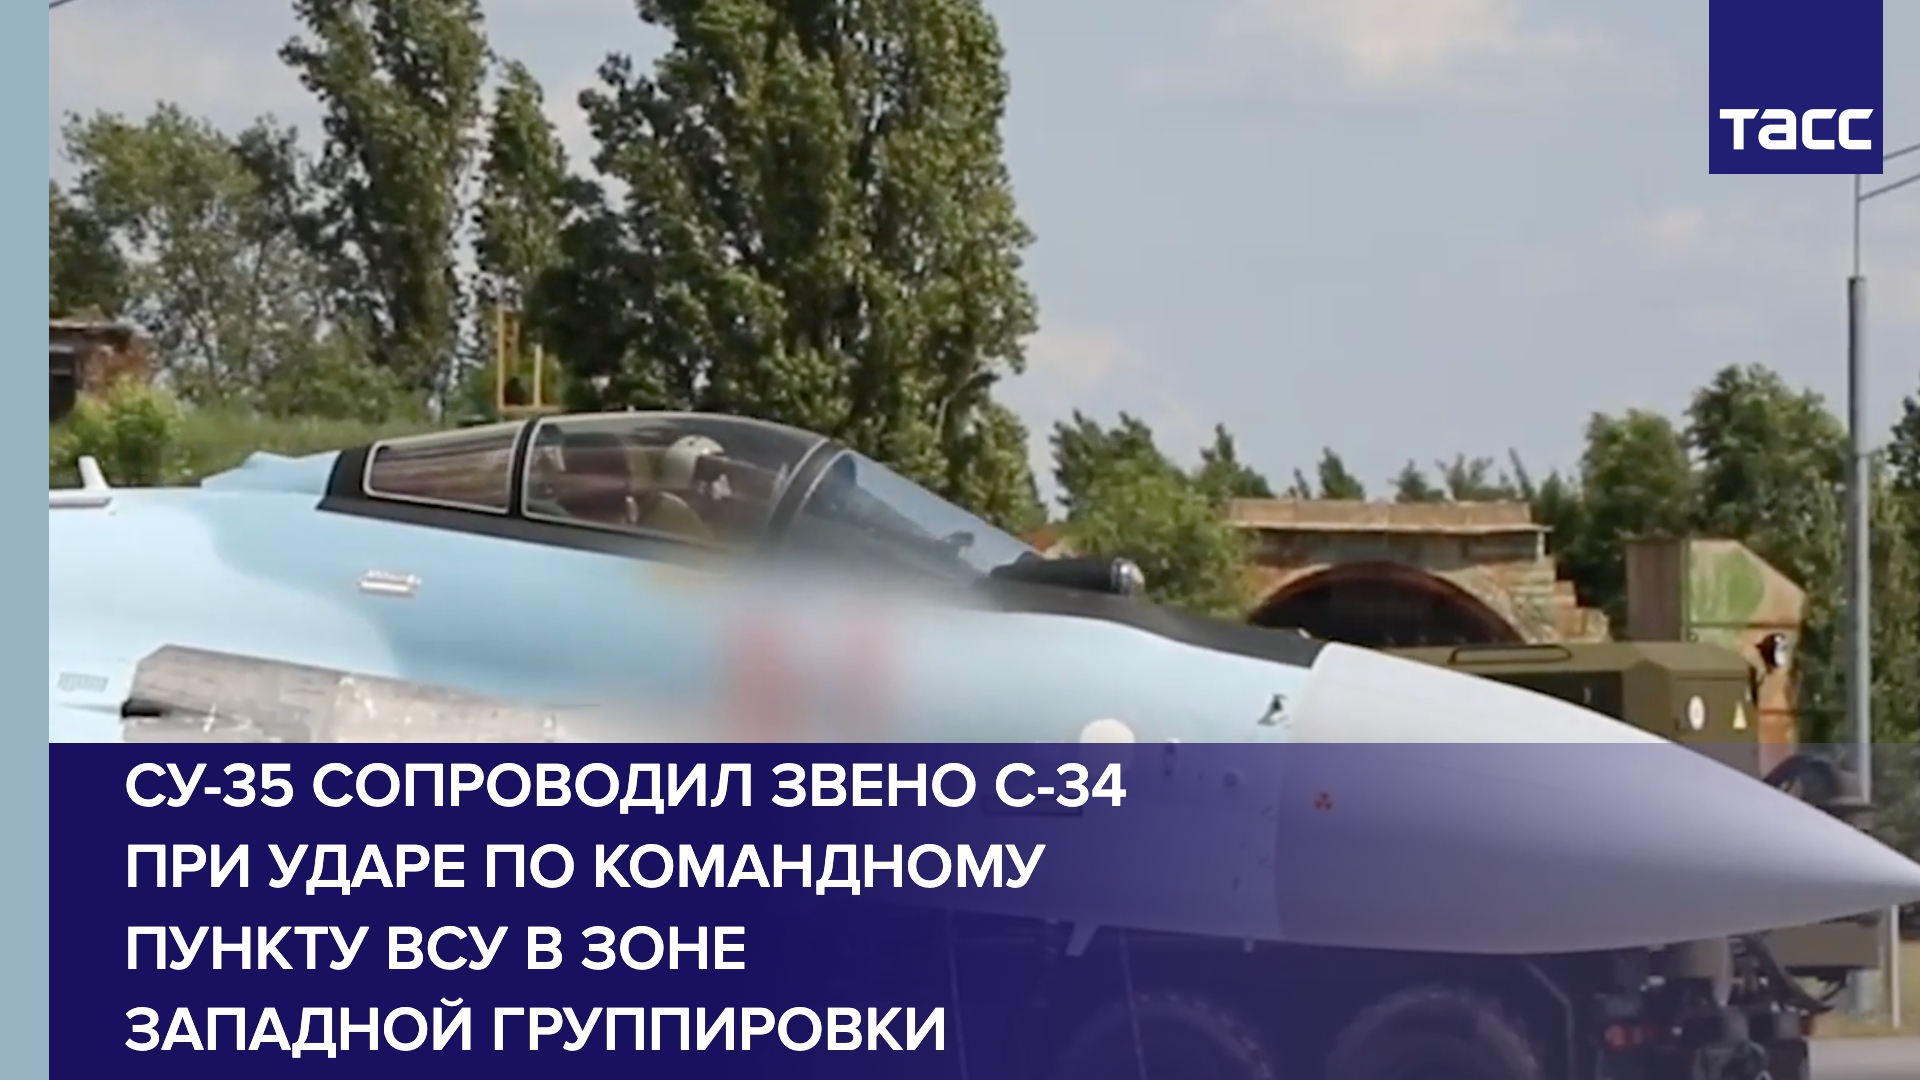 Су-35 сопроводил звено С-34 при ударе по командному пункту ВСУ в зоне Западной группировки